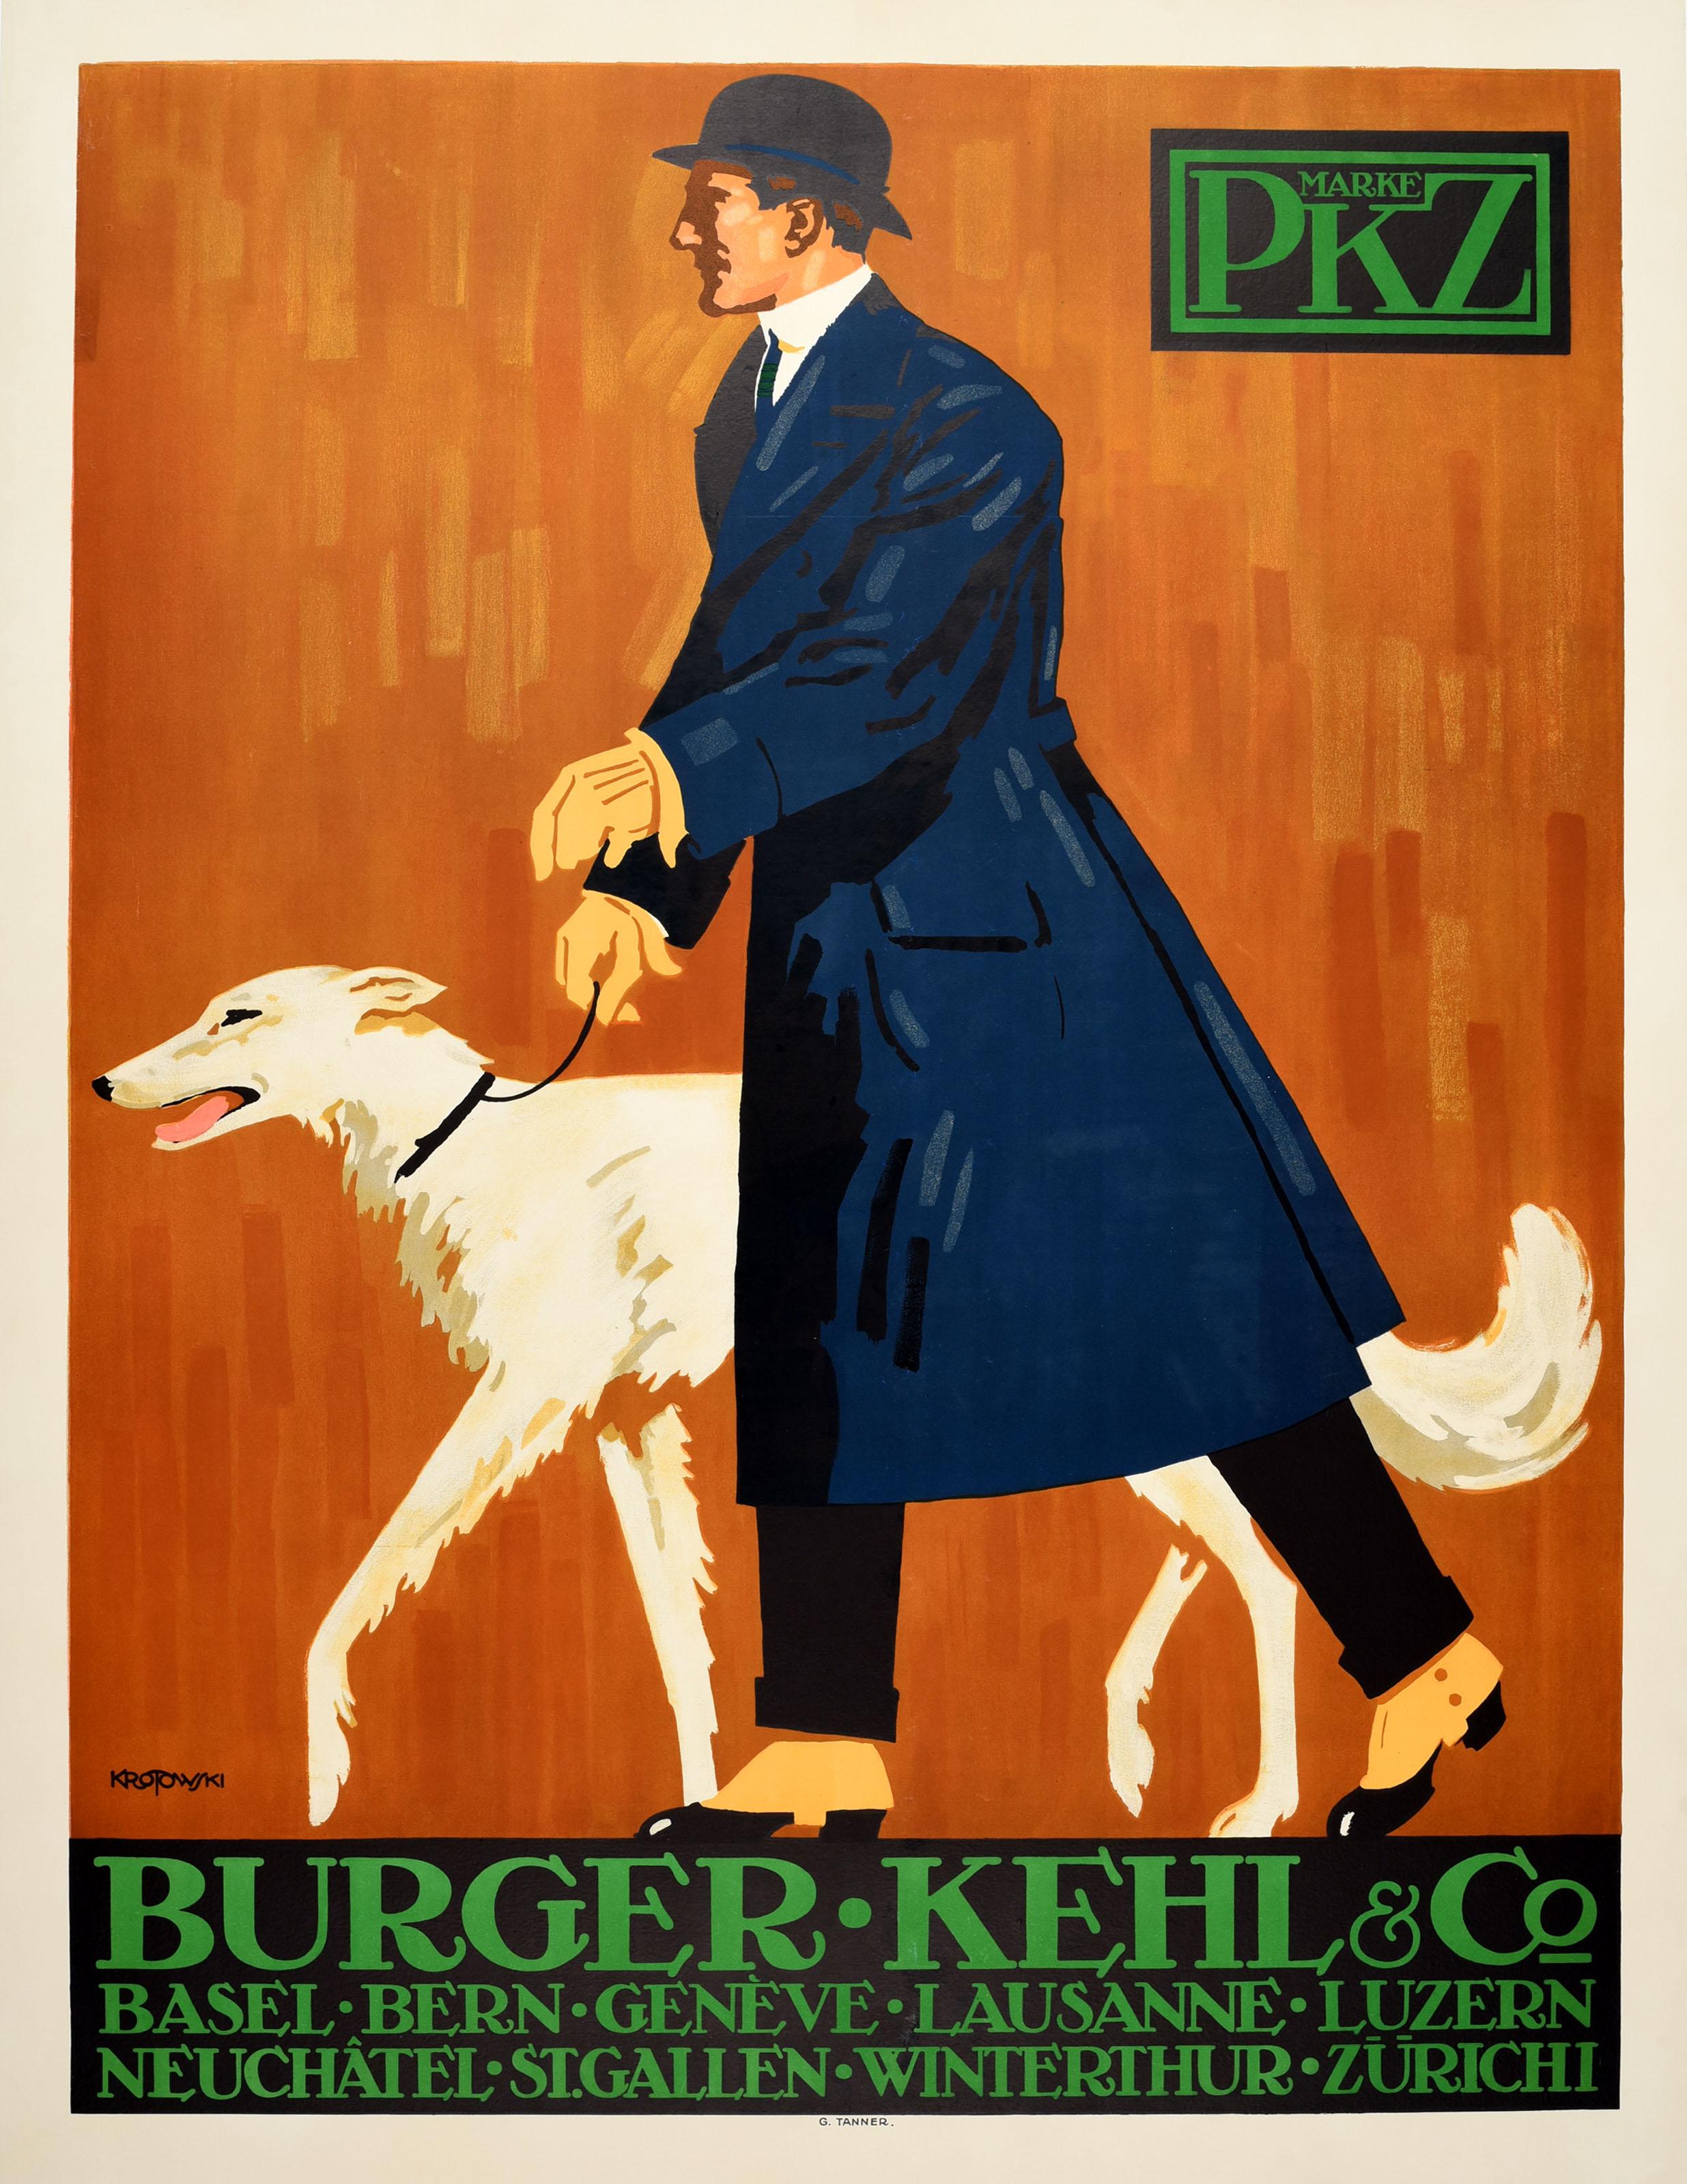 Print Unknown - Affiche publicitaire originale et ancienne de PKZ Burger Kehl & Co, design de mode pour hommes